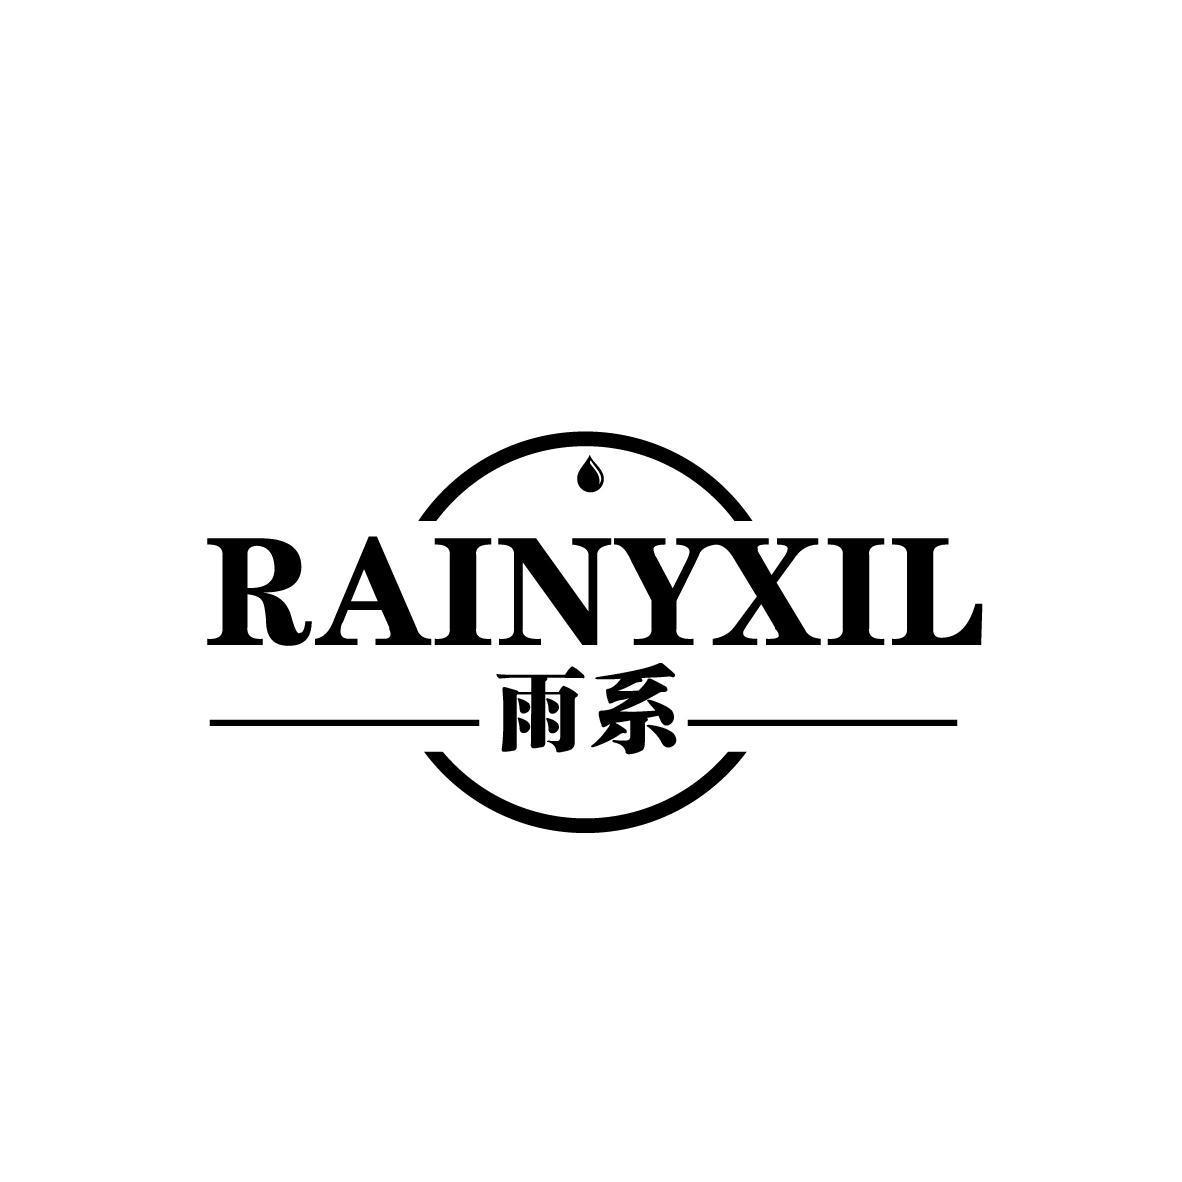 雨系 RAINYXIL